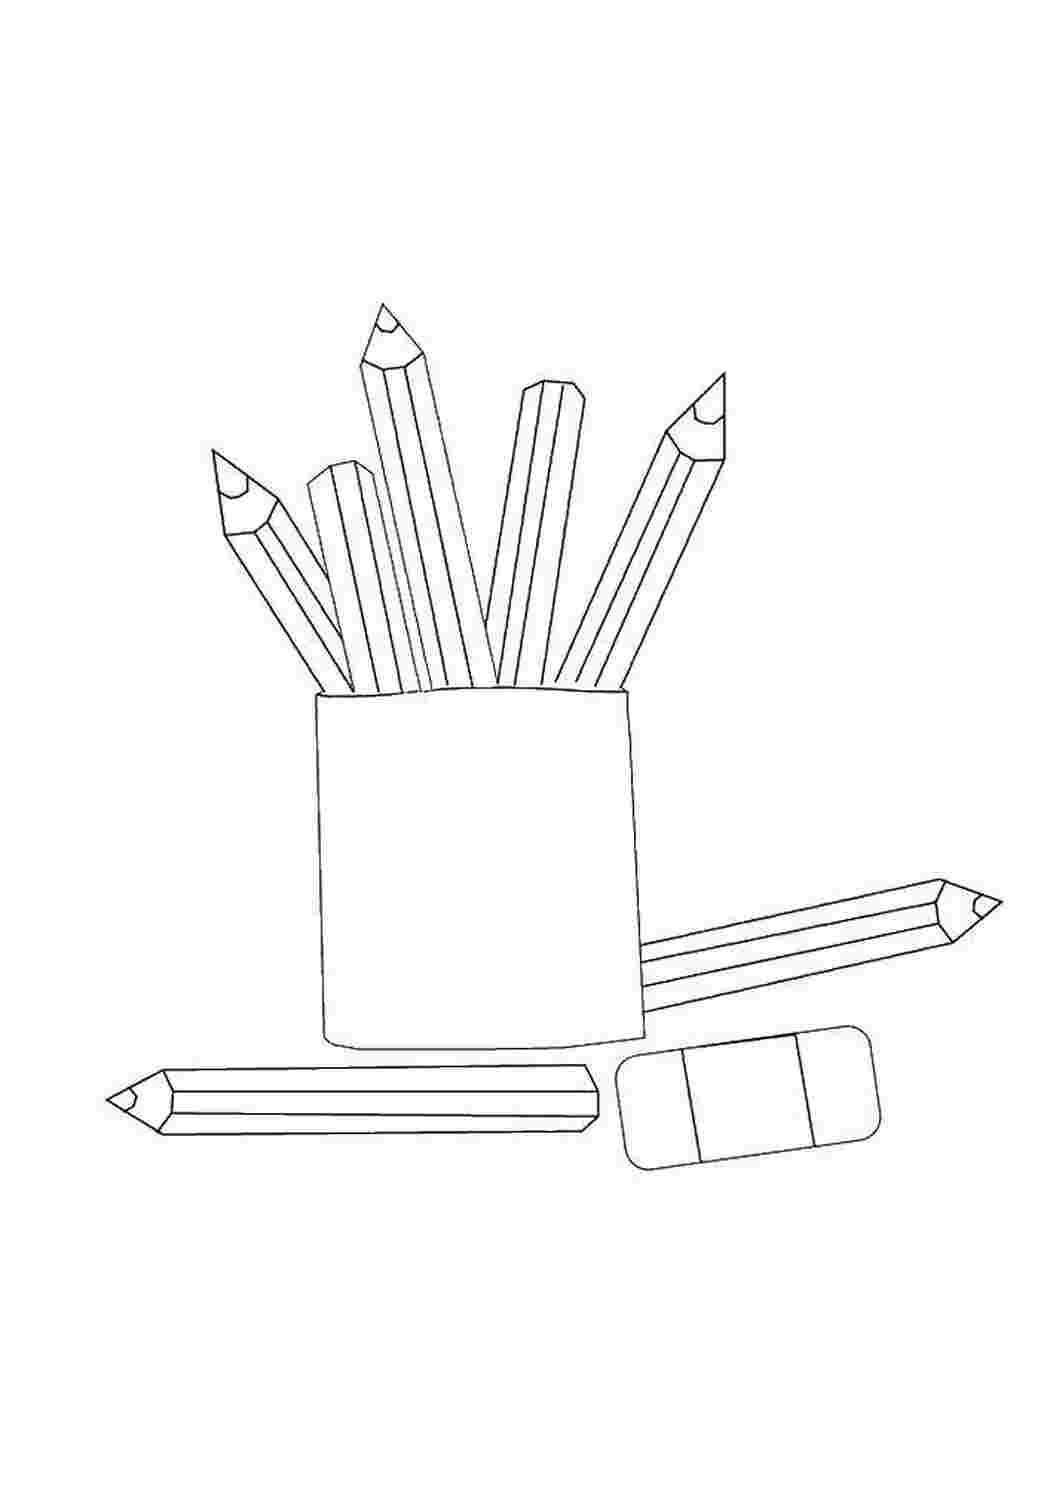 Цветные карандаши: изображения без лицензионных платежей